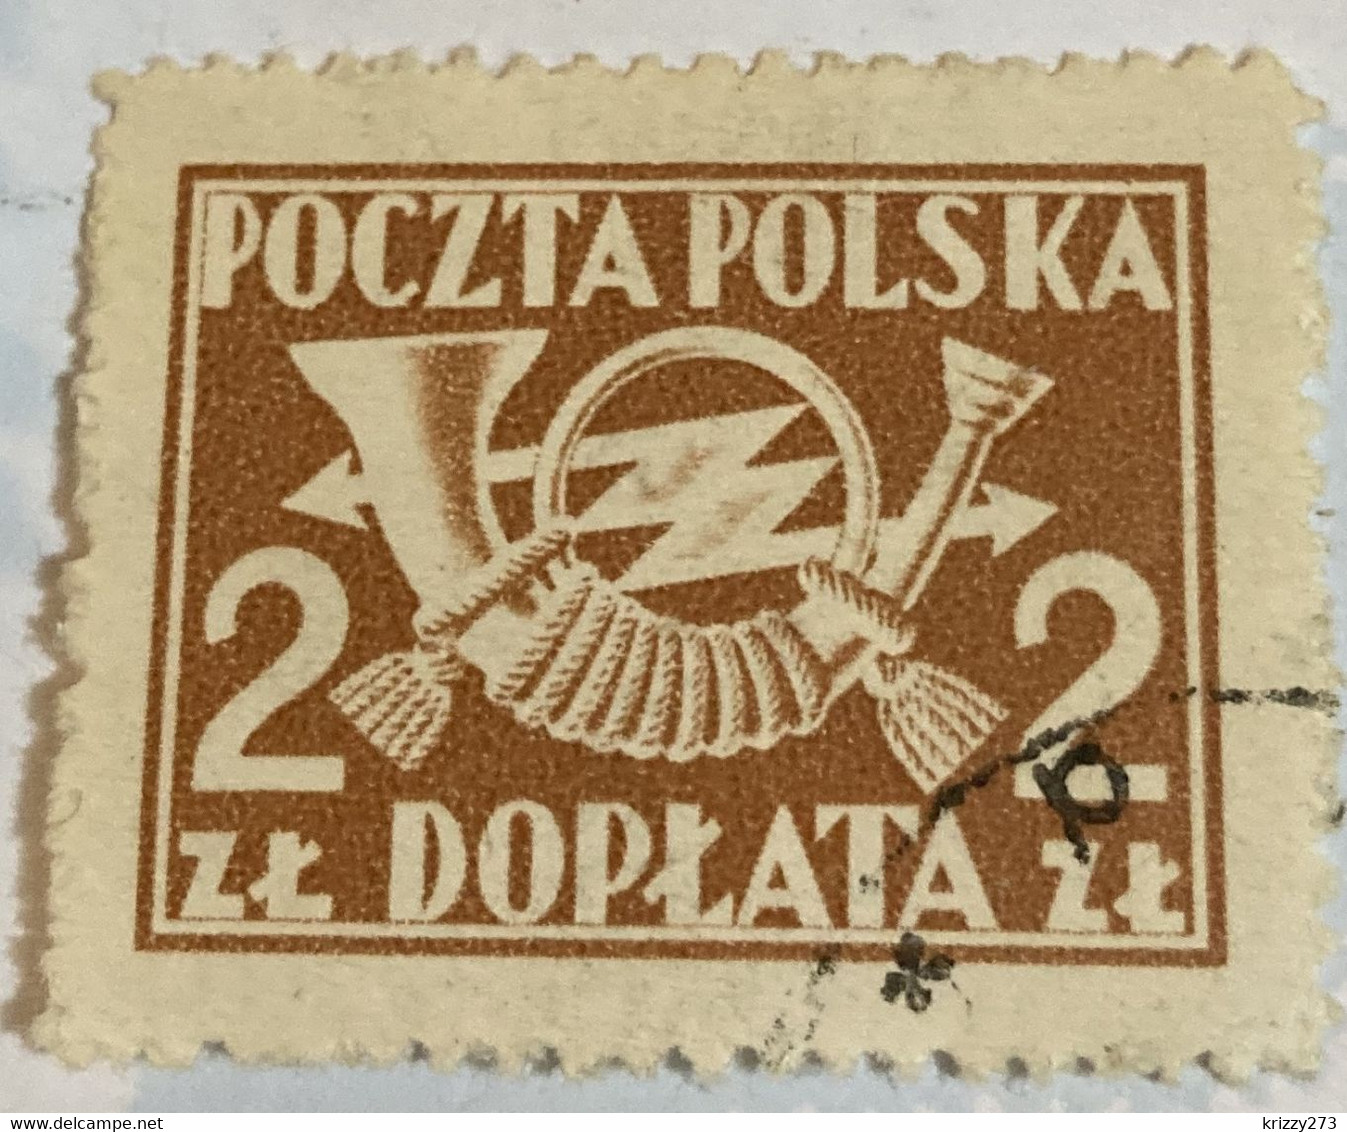 Poland 1945 Post Horn 2zl - Used - Taxe